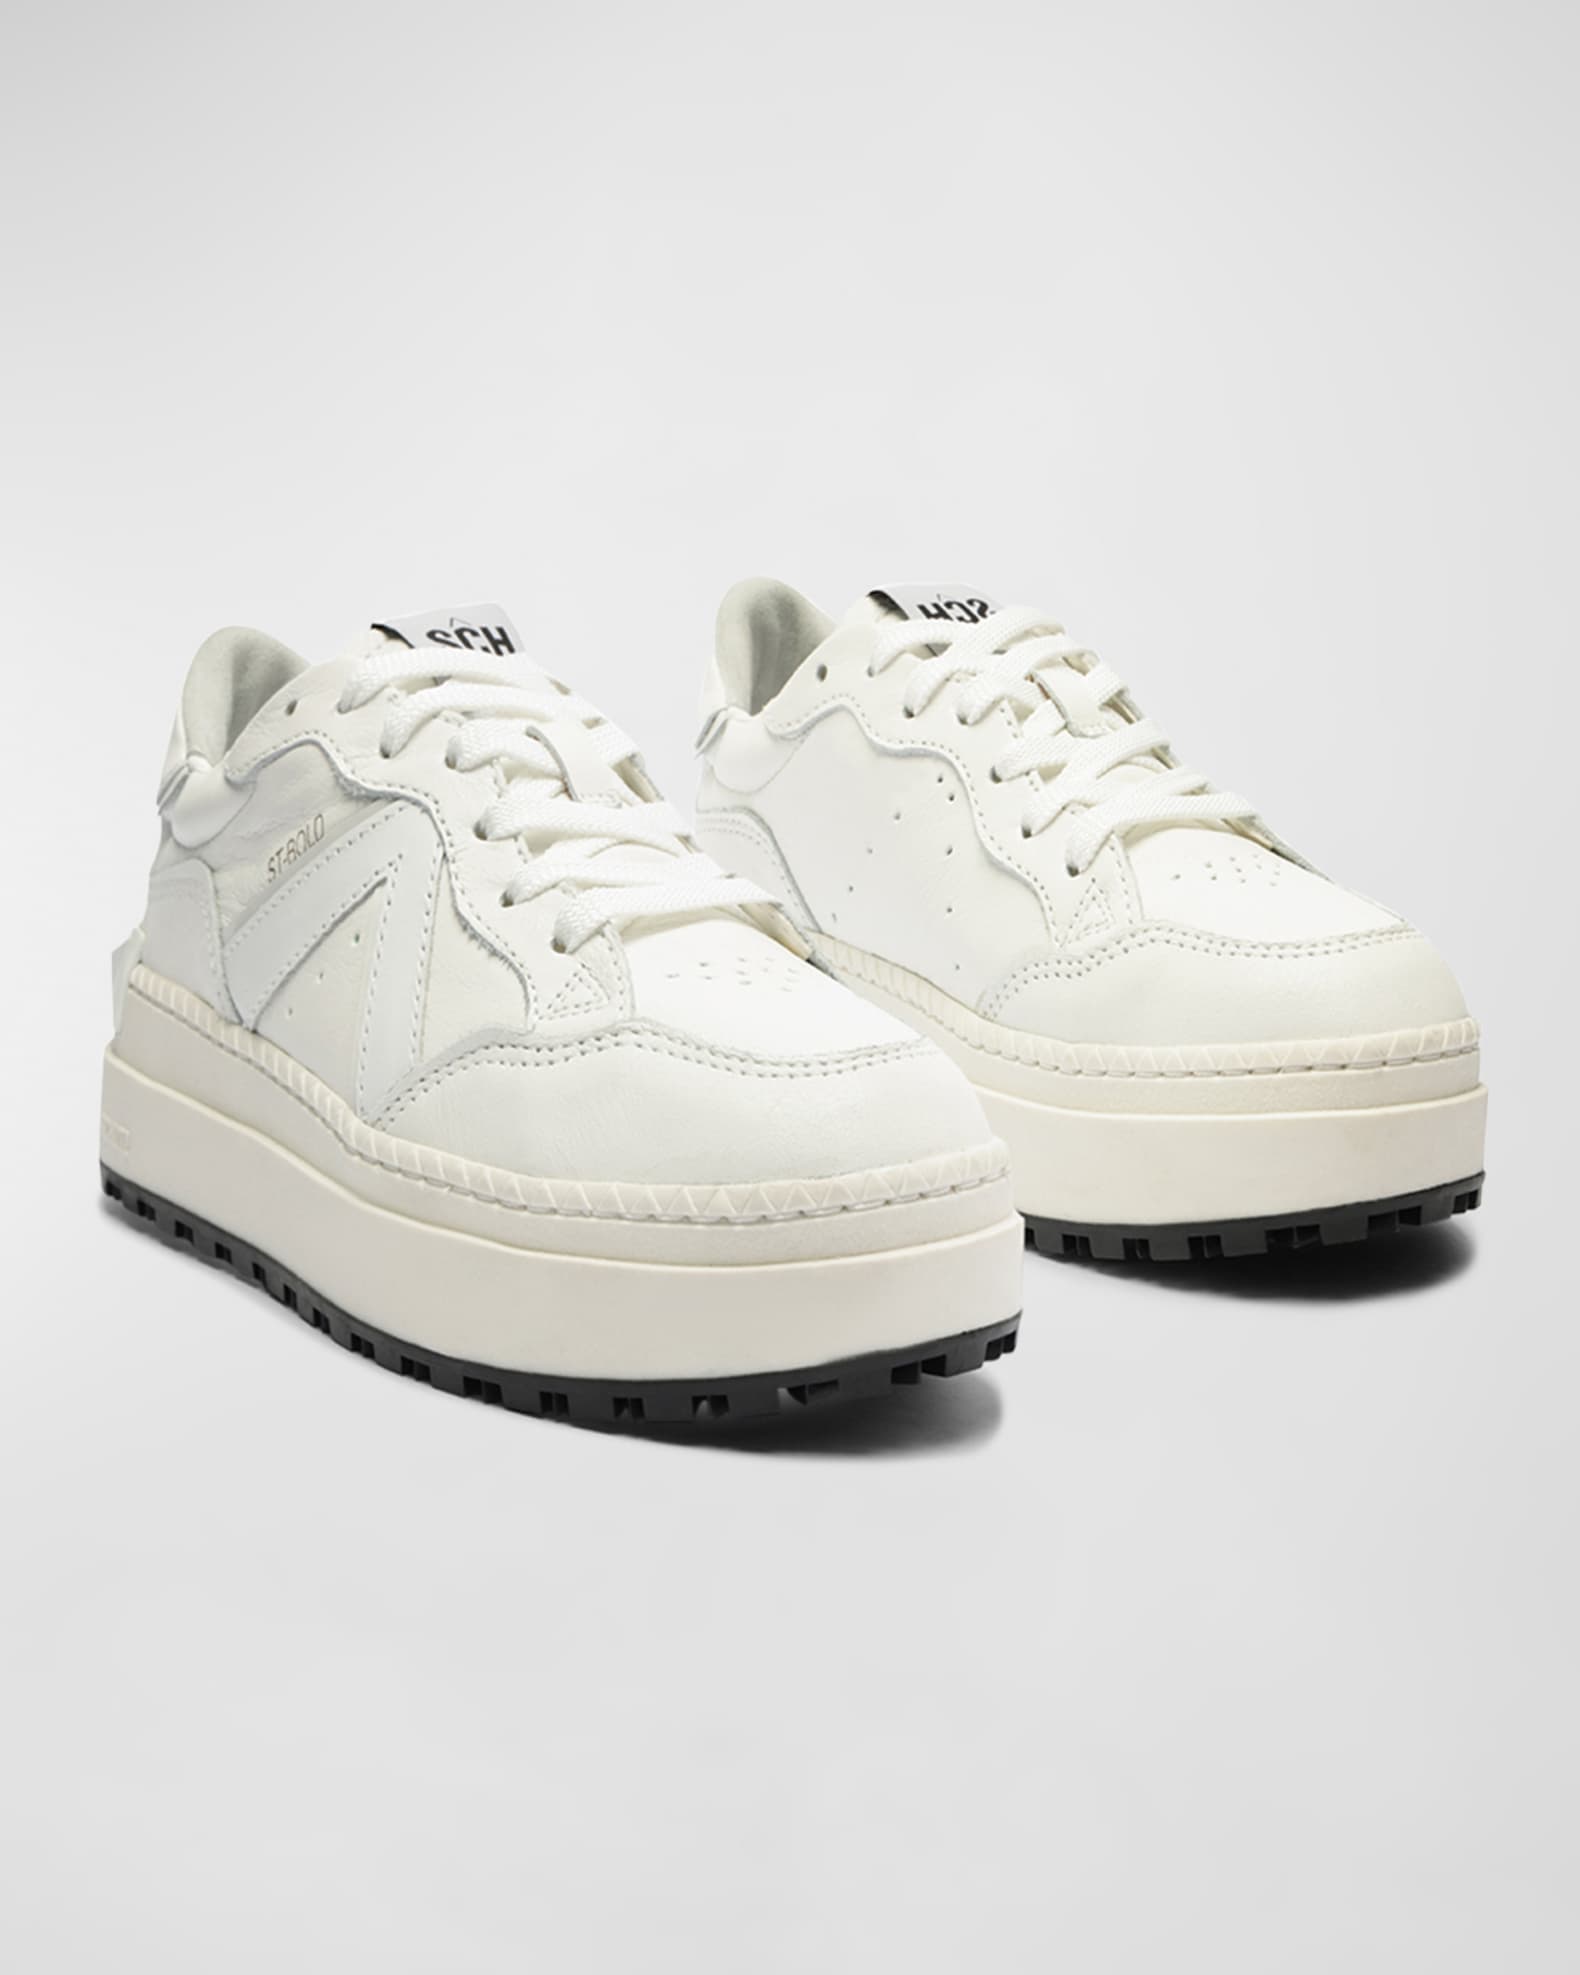 Schutz Leather Low-Top Sneakers | Neiman Marcus